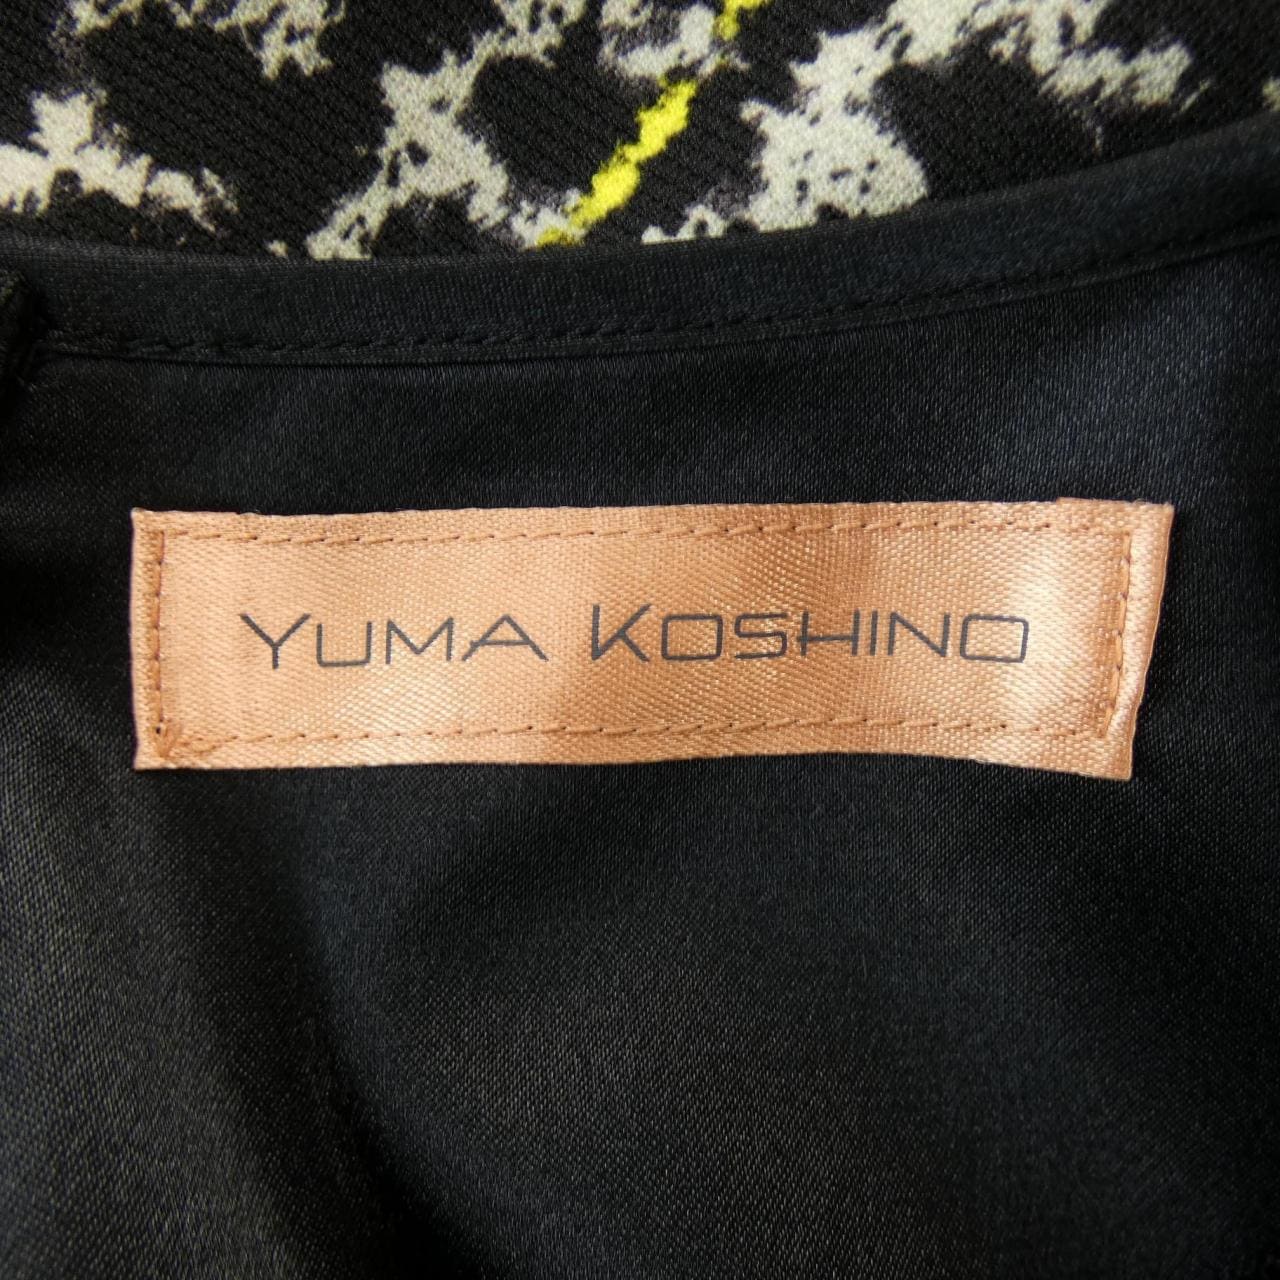 ユマコシノ YUMA KOSHINO ワンピース